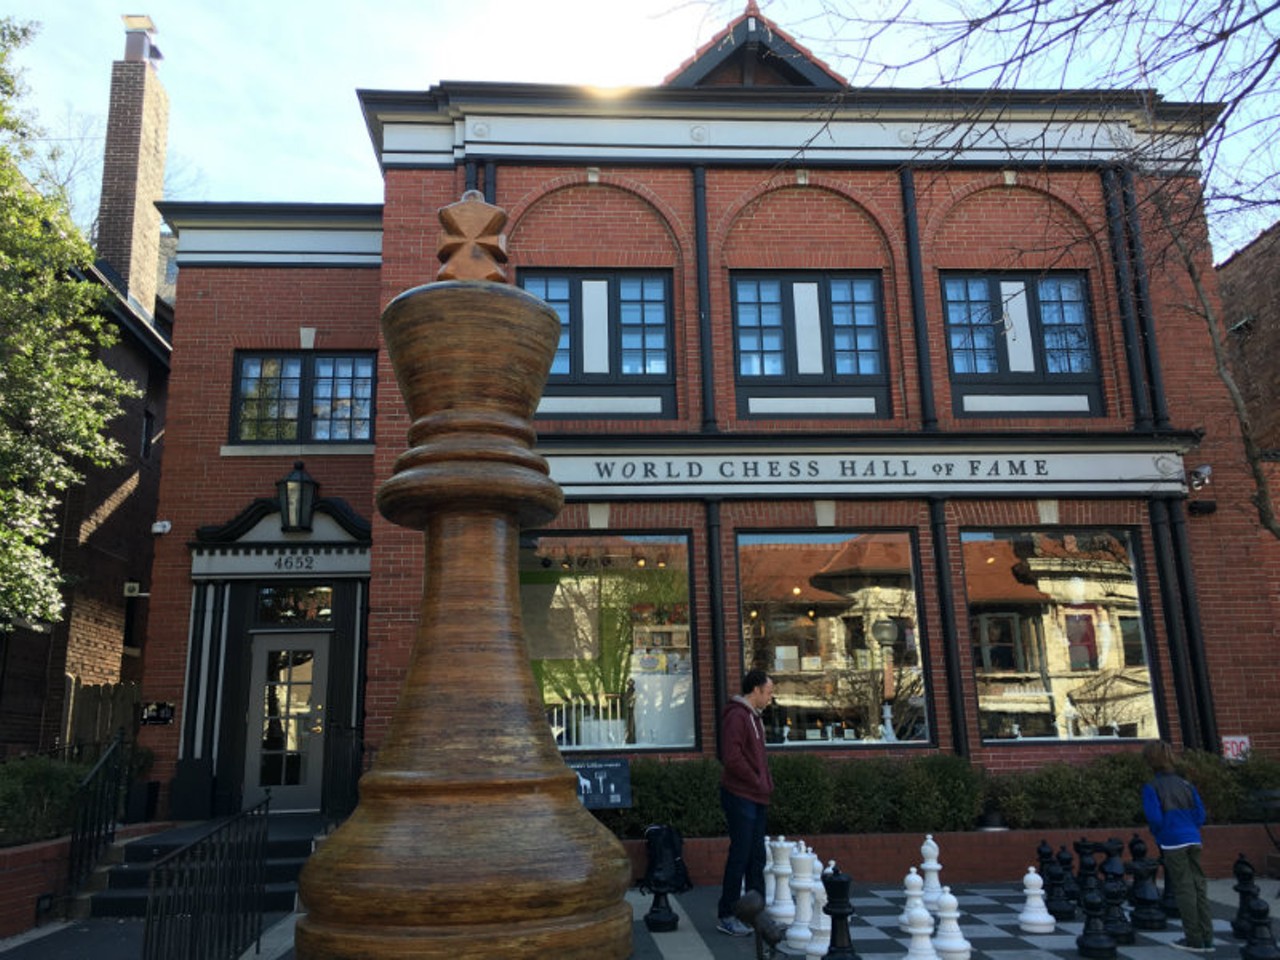 Saint Louis Chess Club